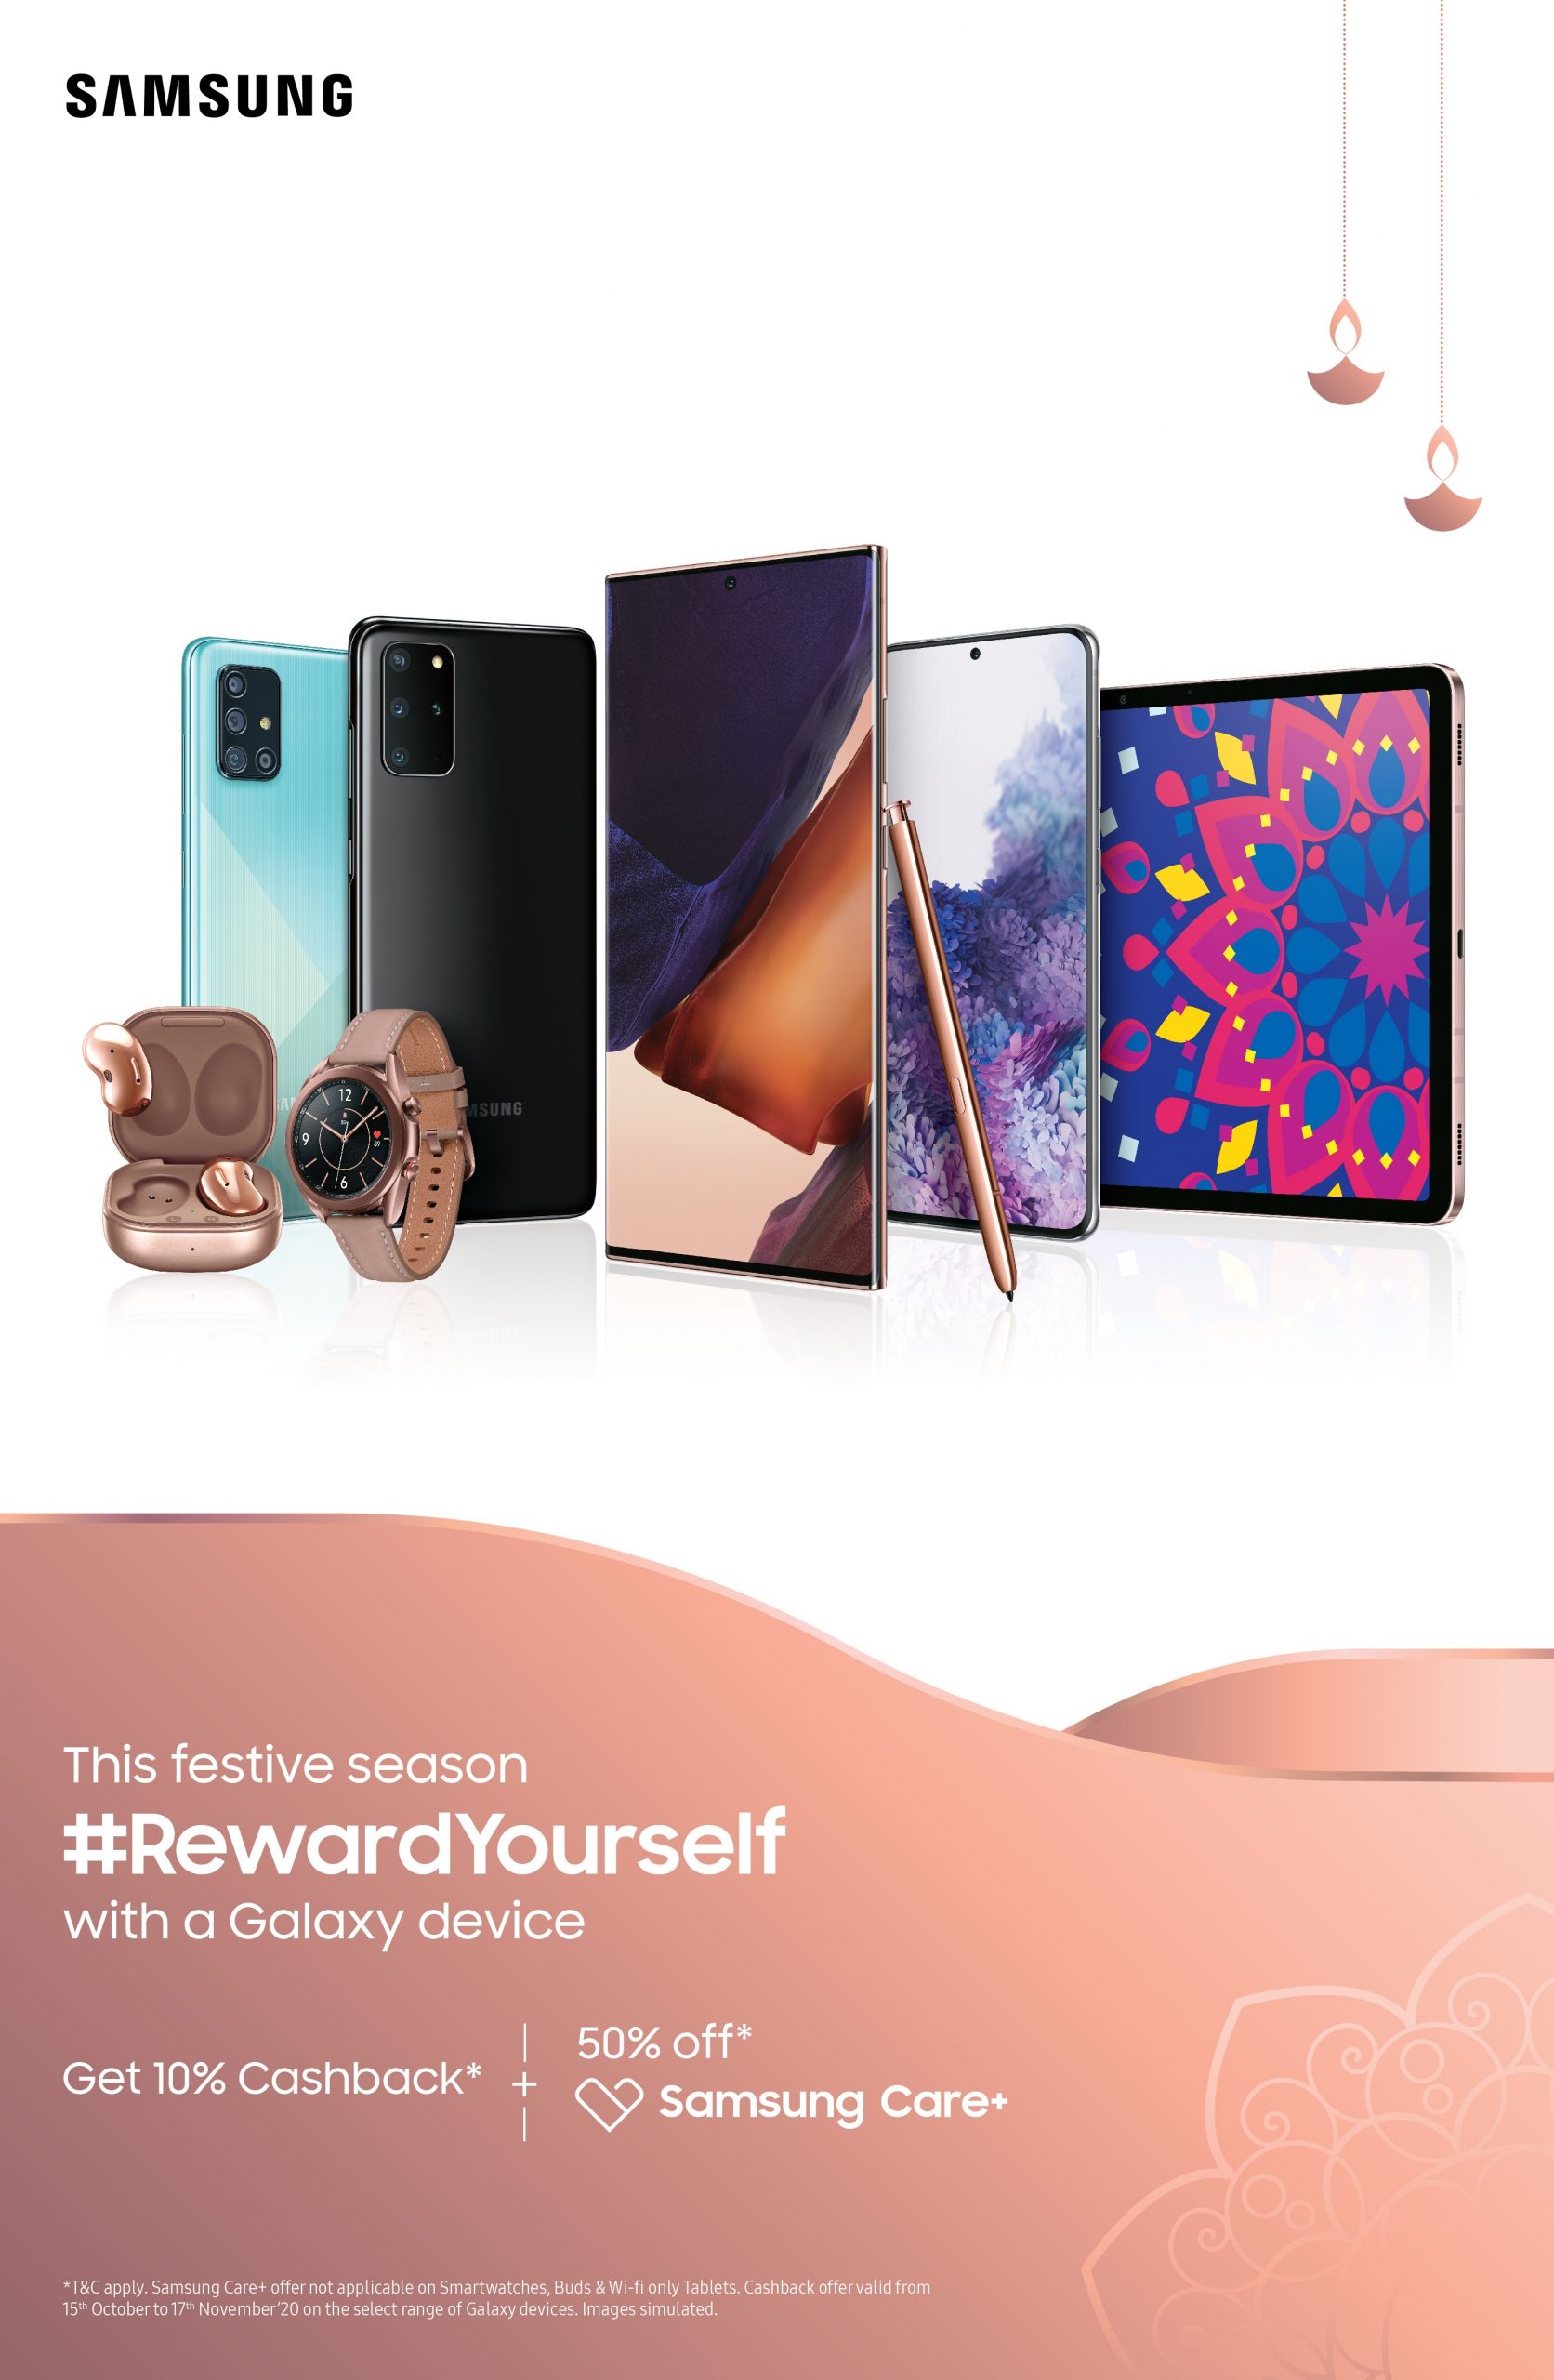 Samsung’s ‘Reward Yourself’ 